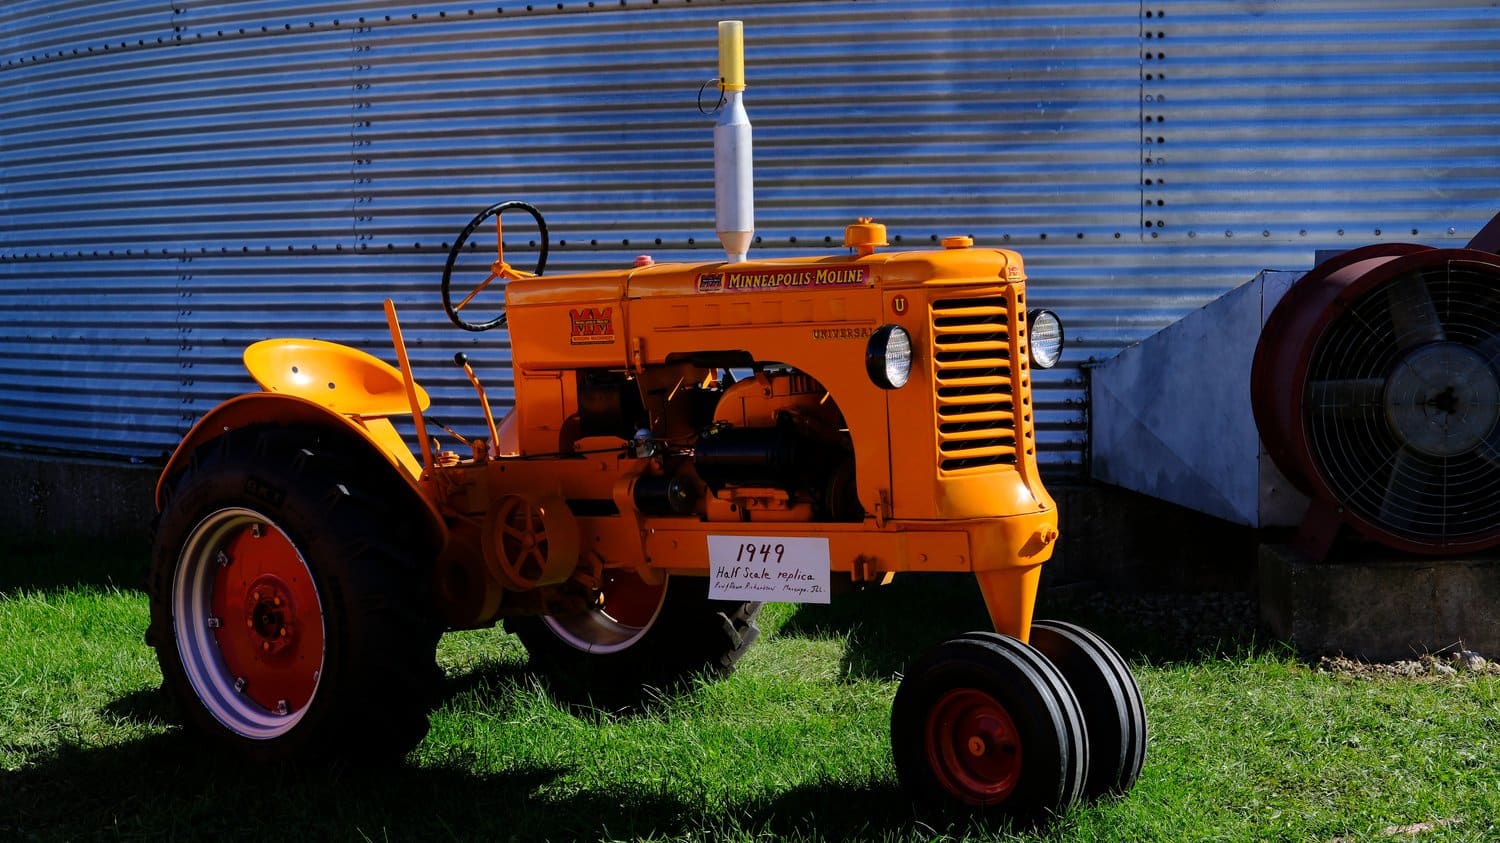 Half scale replica of a 1949 Minneapolis Moline tractor.